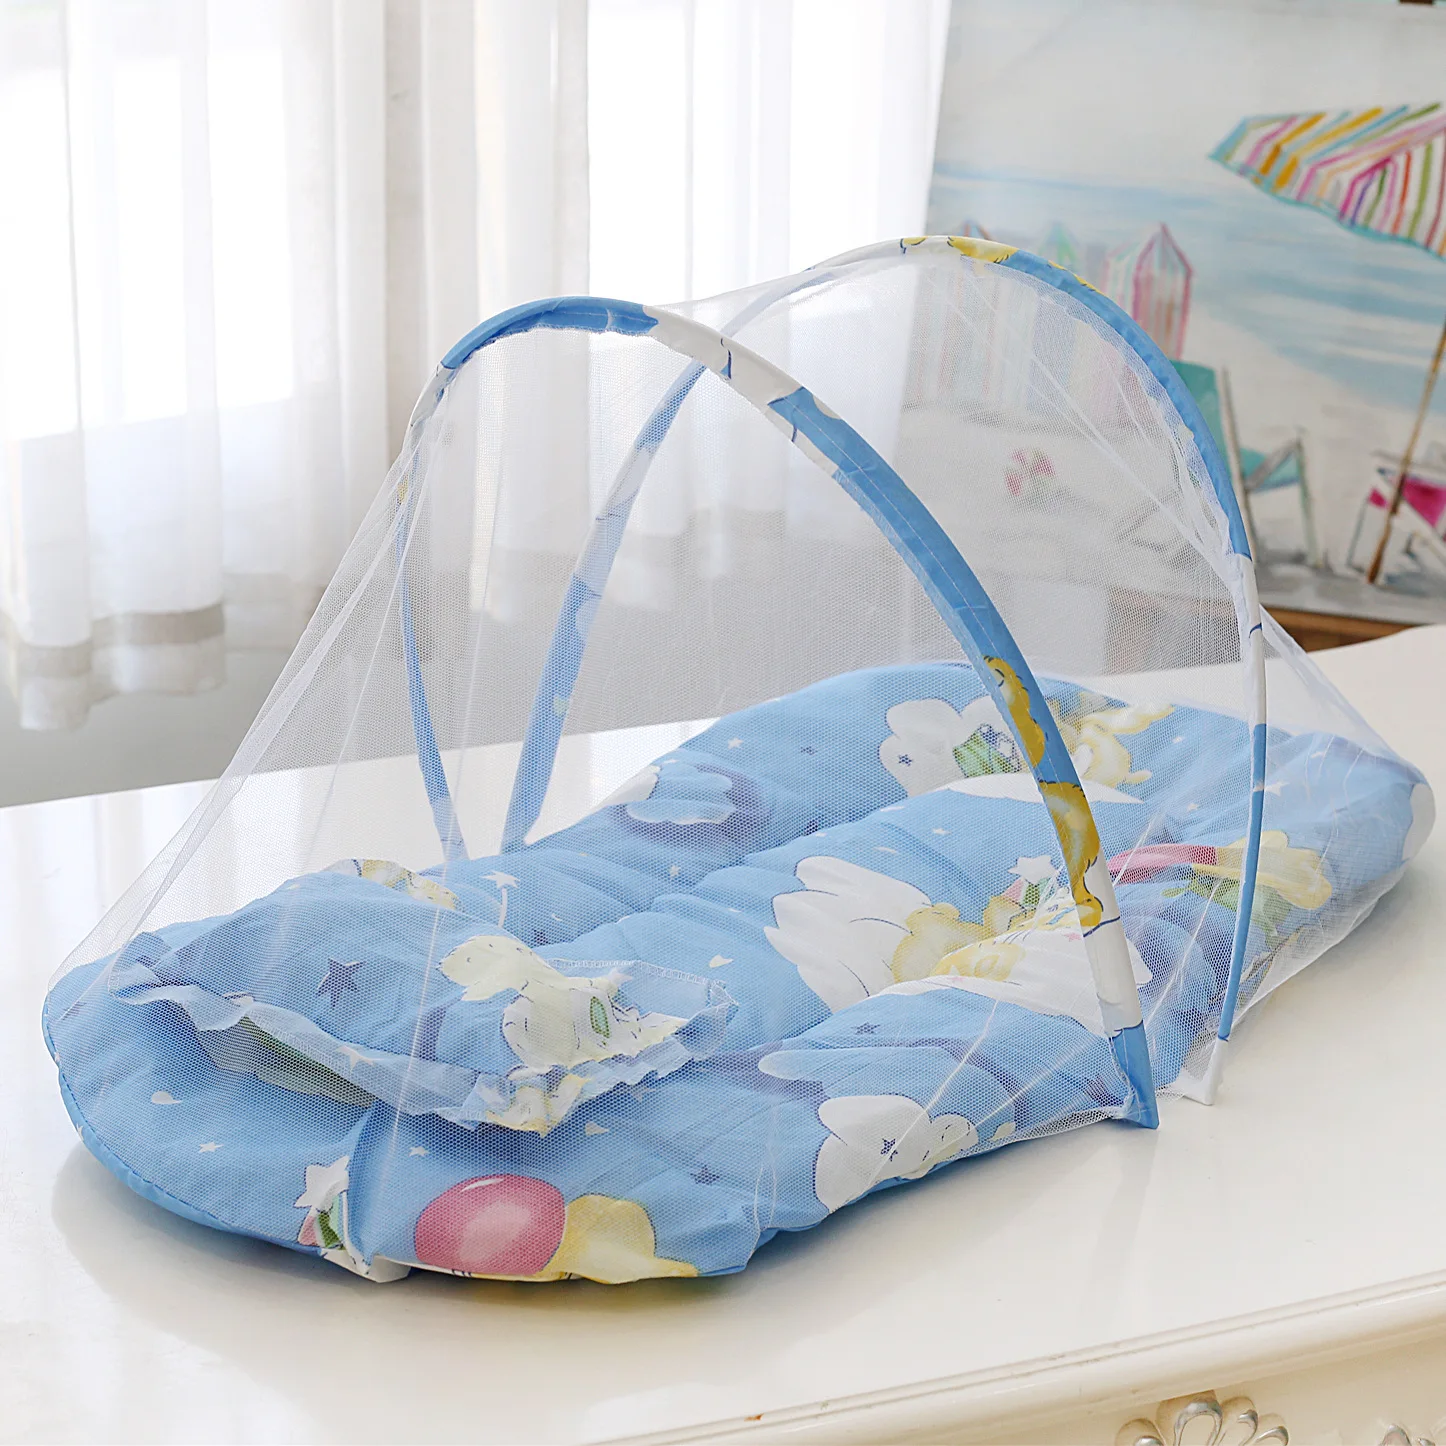 코튼 베개로 접을 수 있는 아기 침대, 유아용 모기장, 휴대용 접이식 아기 침구